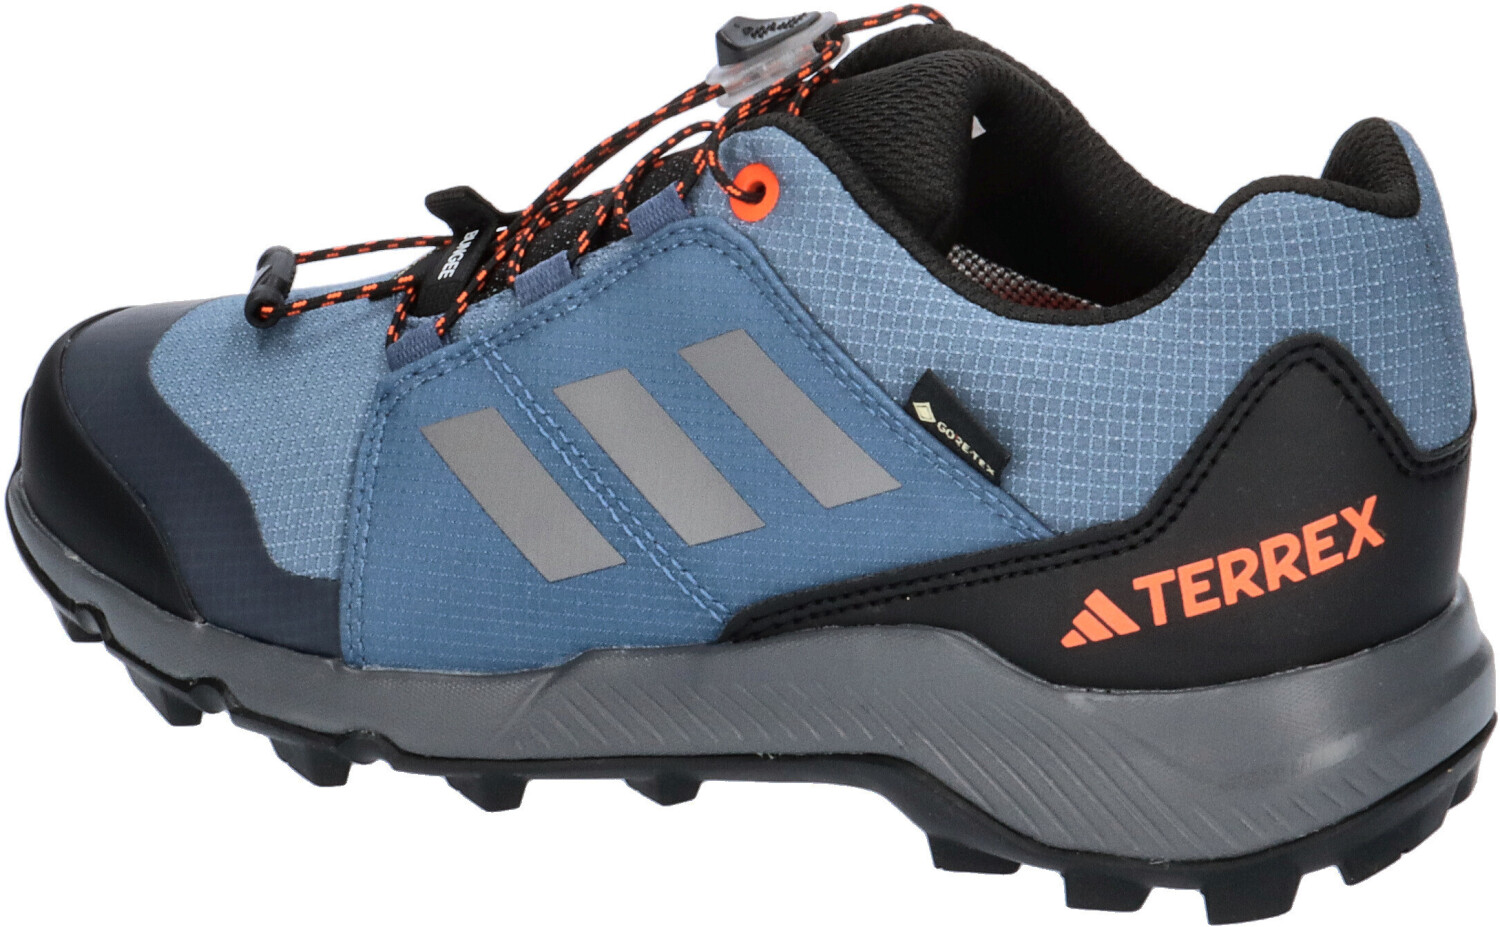 Adidas Terrex Gore-Tex Hiking ab 59,95 steel/grey bei € three/impact orange | Preisvergleich Kids wonder